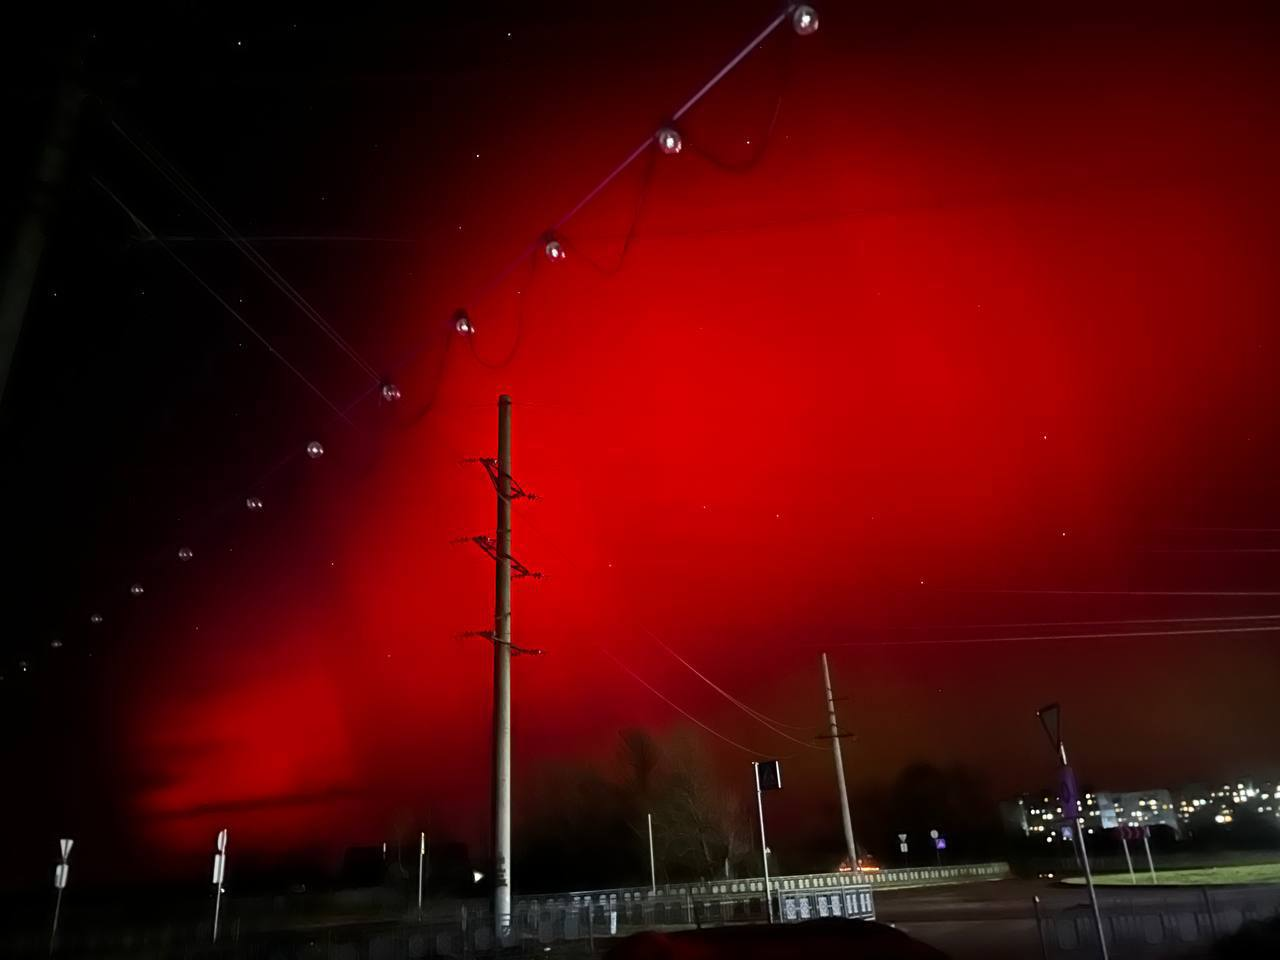 Минулої ночі в небі над Україною з'явилося червоне полярне сяйво (фото)